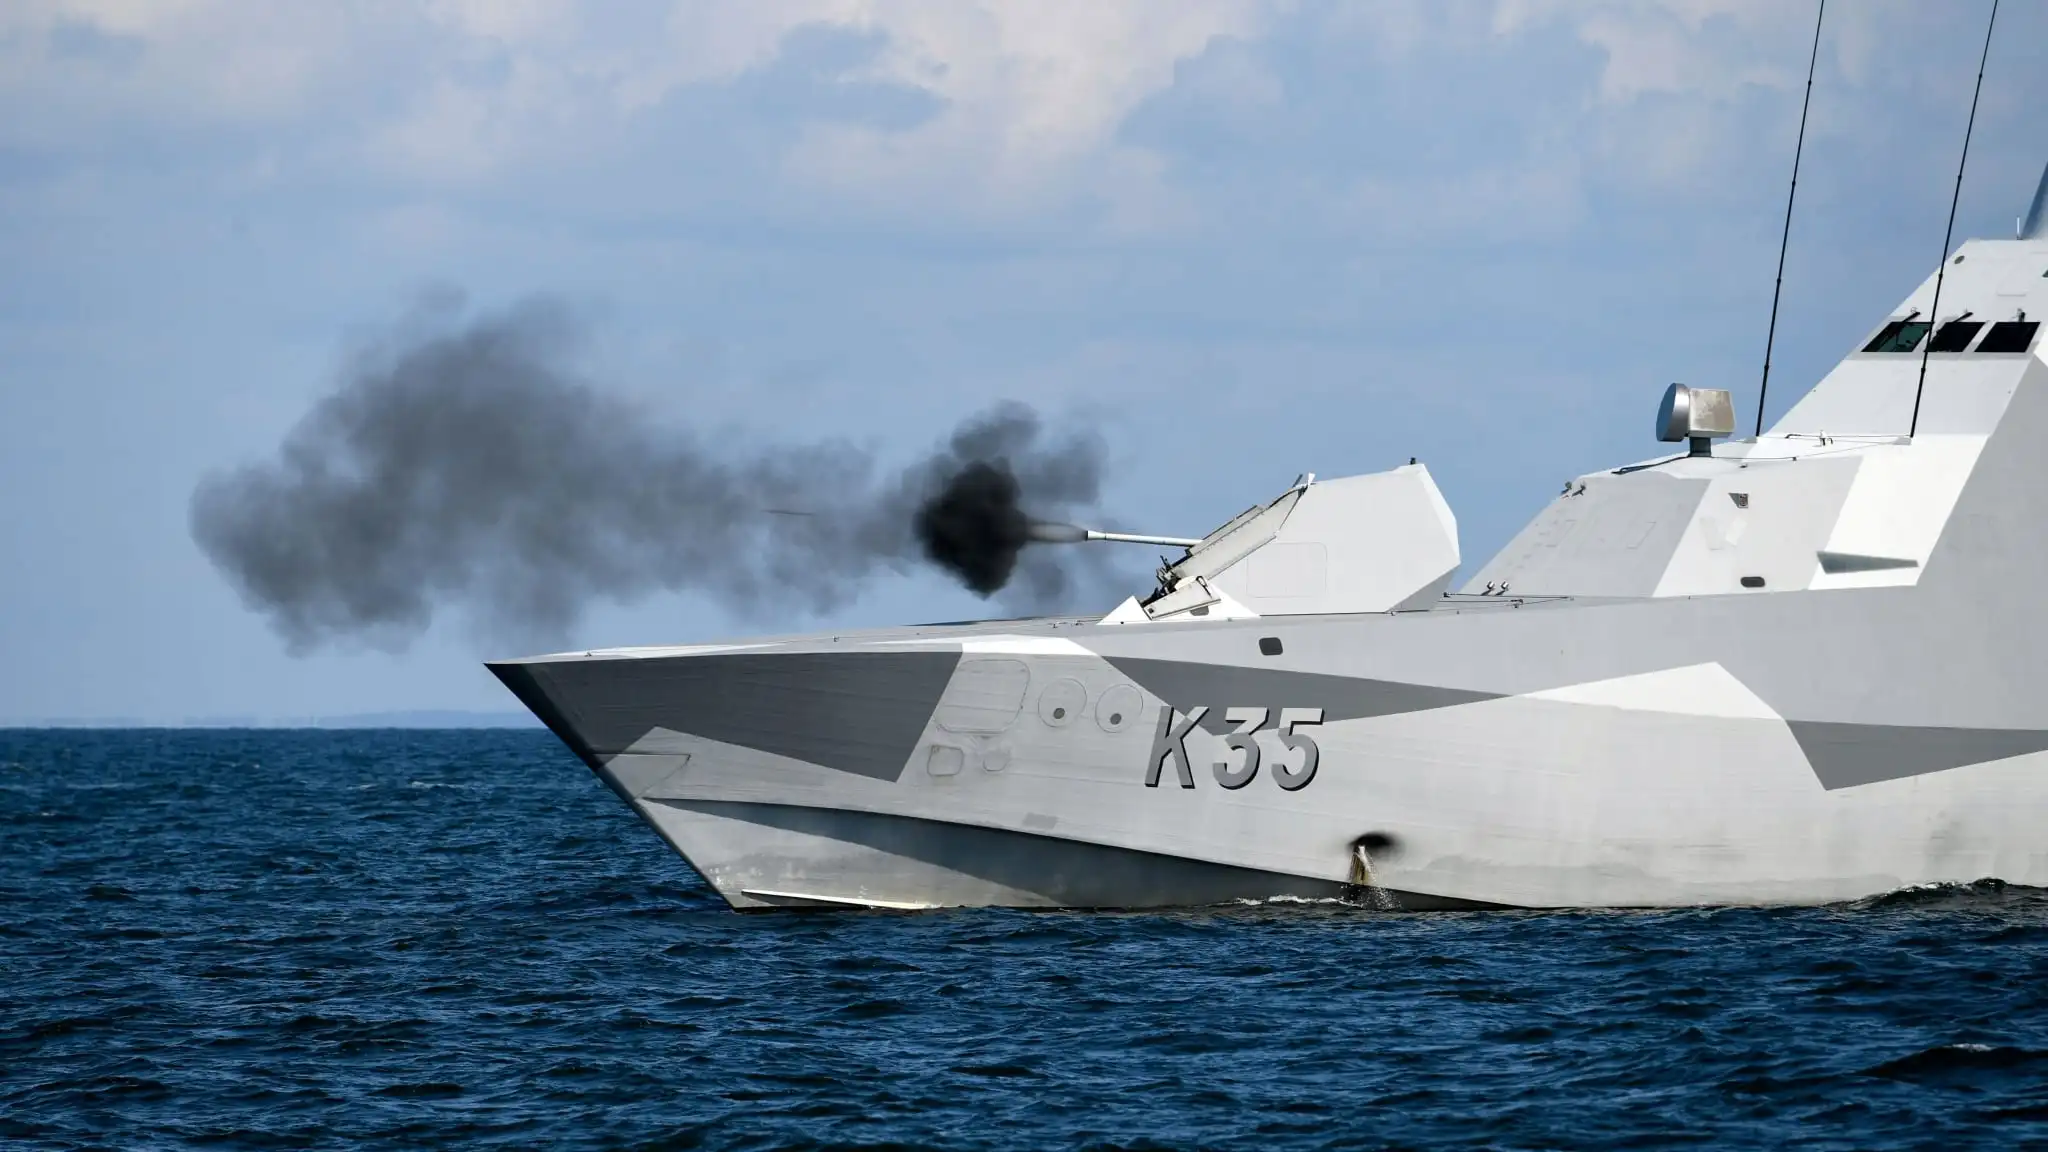 Παροξυσμός στην Σουηδία κατά Ρωσίας: «Ο Στόλος μας είναι έτοιμος να αντιμετωπίσει ρωσική επίθεση» – Σε συναγερμό το σουηδικό Ναυτικό